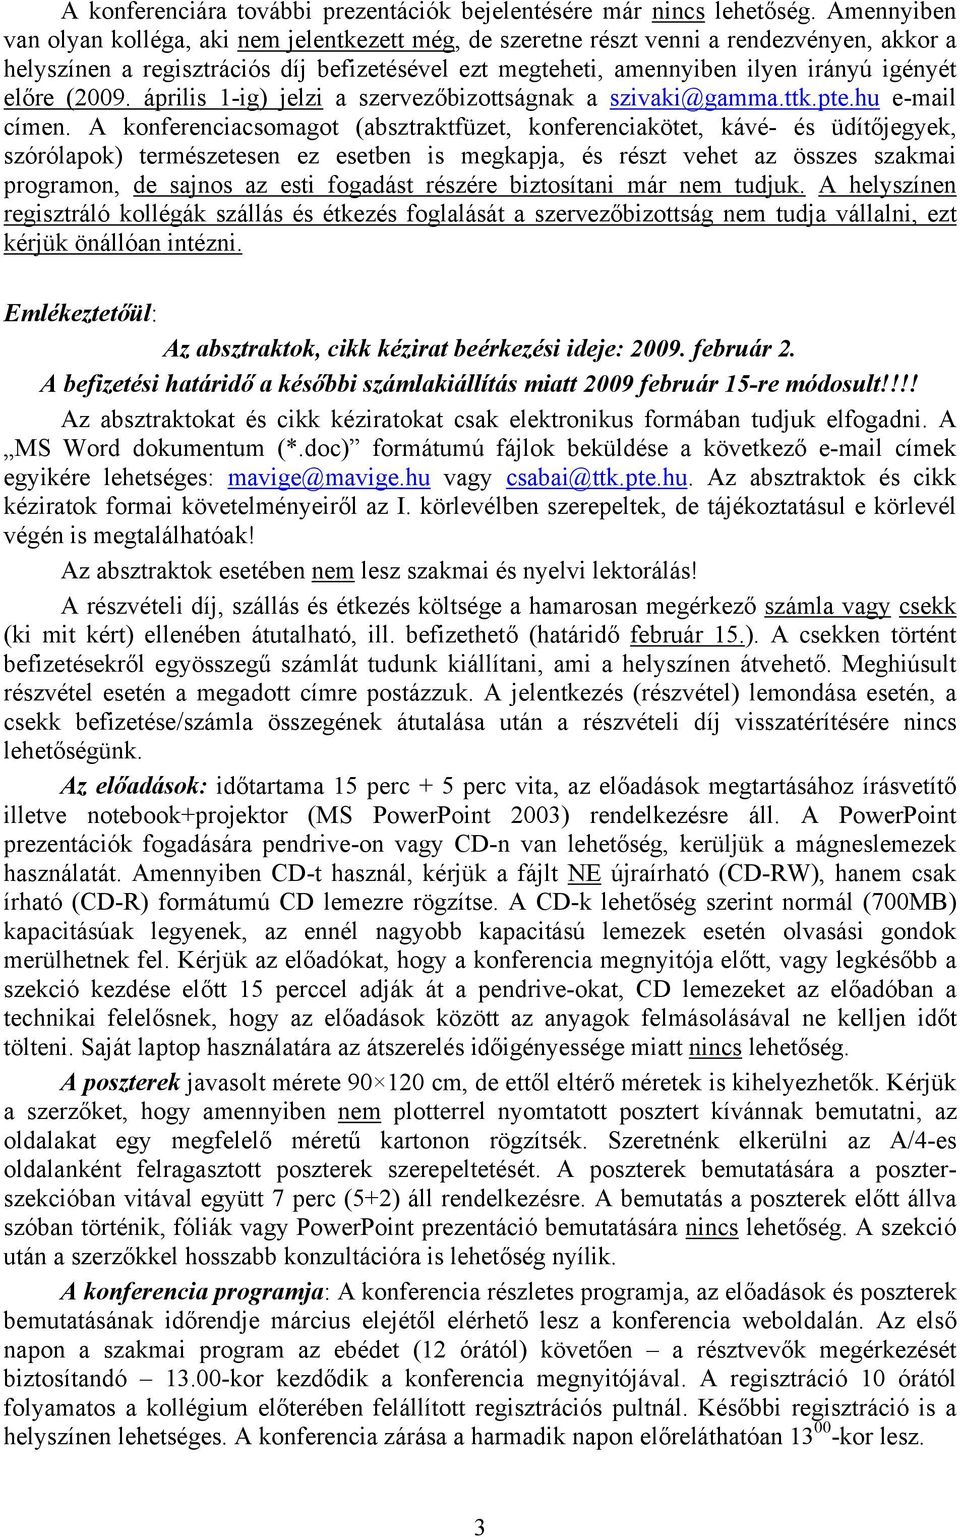 előre (2009. április 1-ig) jelzi a szervezőbizottságnak a szivaki@gamma.ttk.pte.hu e-mail címen.